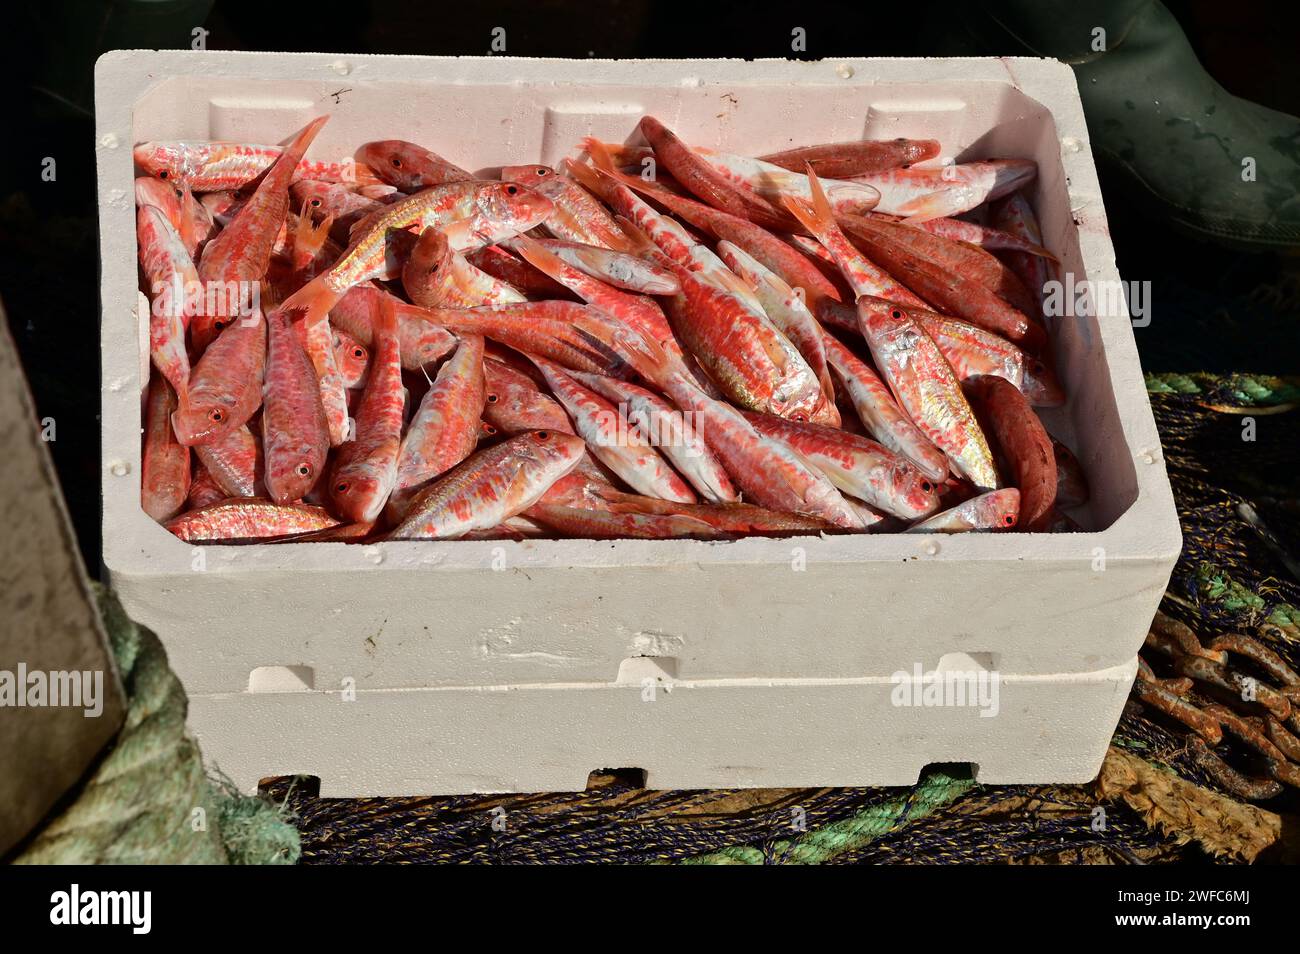 Eine Fischkiste mit frisch gefangener Rotbarbe (Mullus surmulletus) in Polystyrol-EPS-Fischkisten. Wild gefangener, gesunder, frischer Meeresfisch. Stockfoto